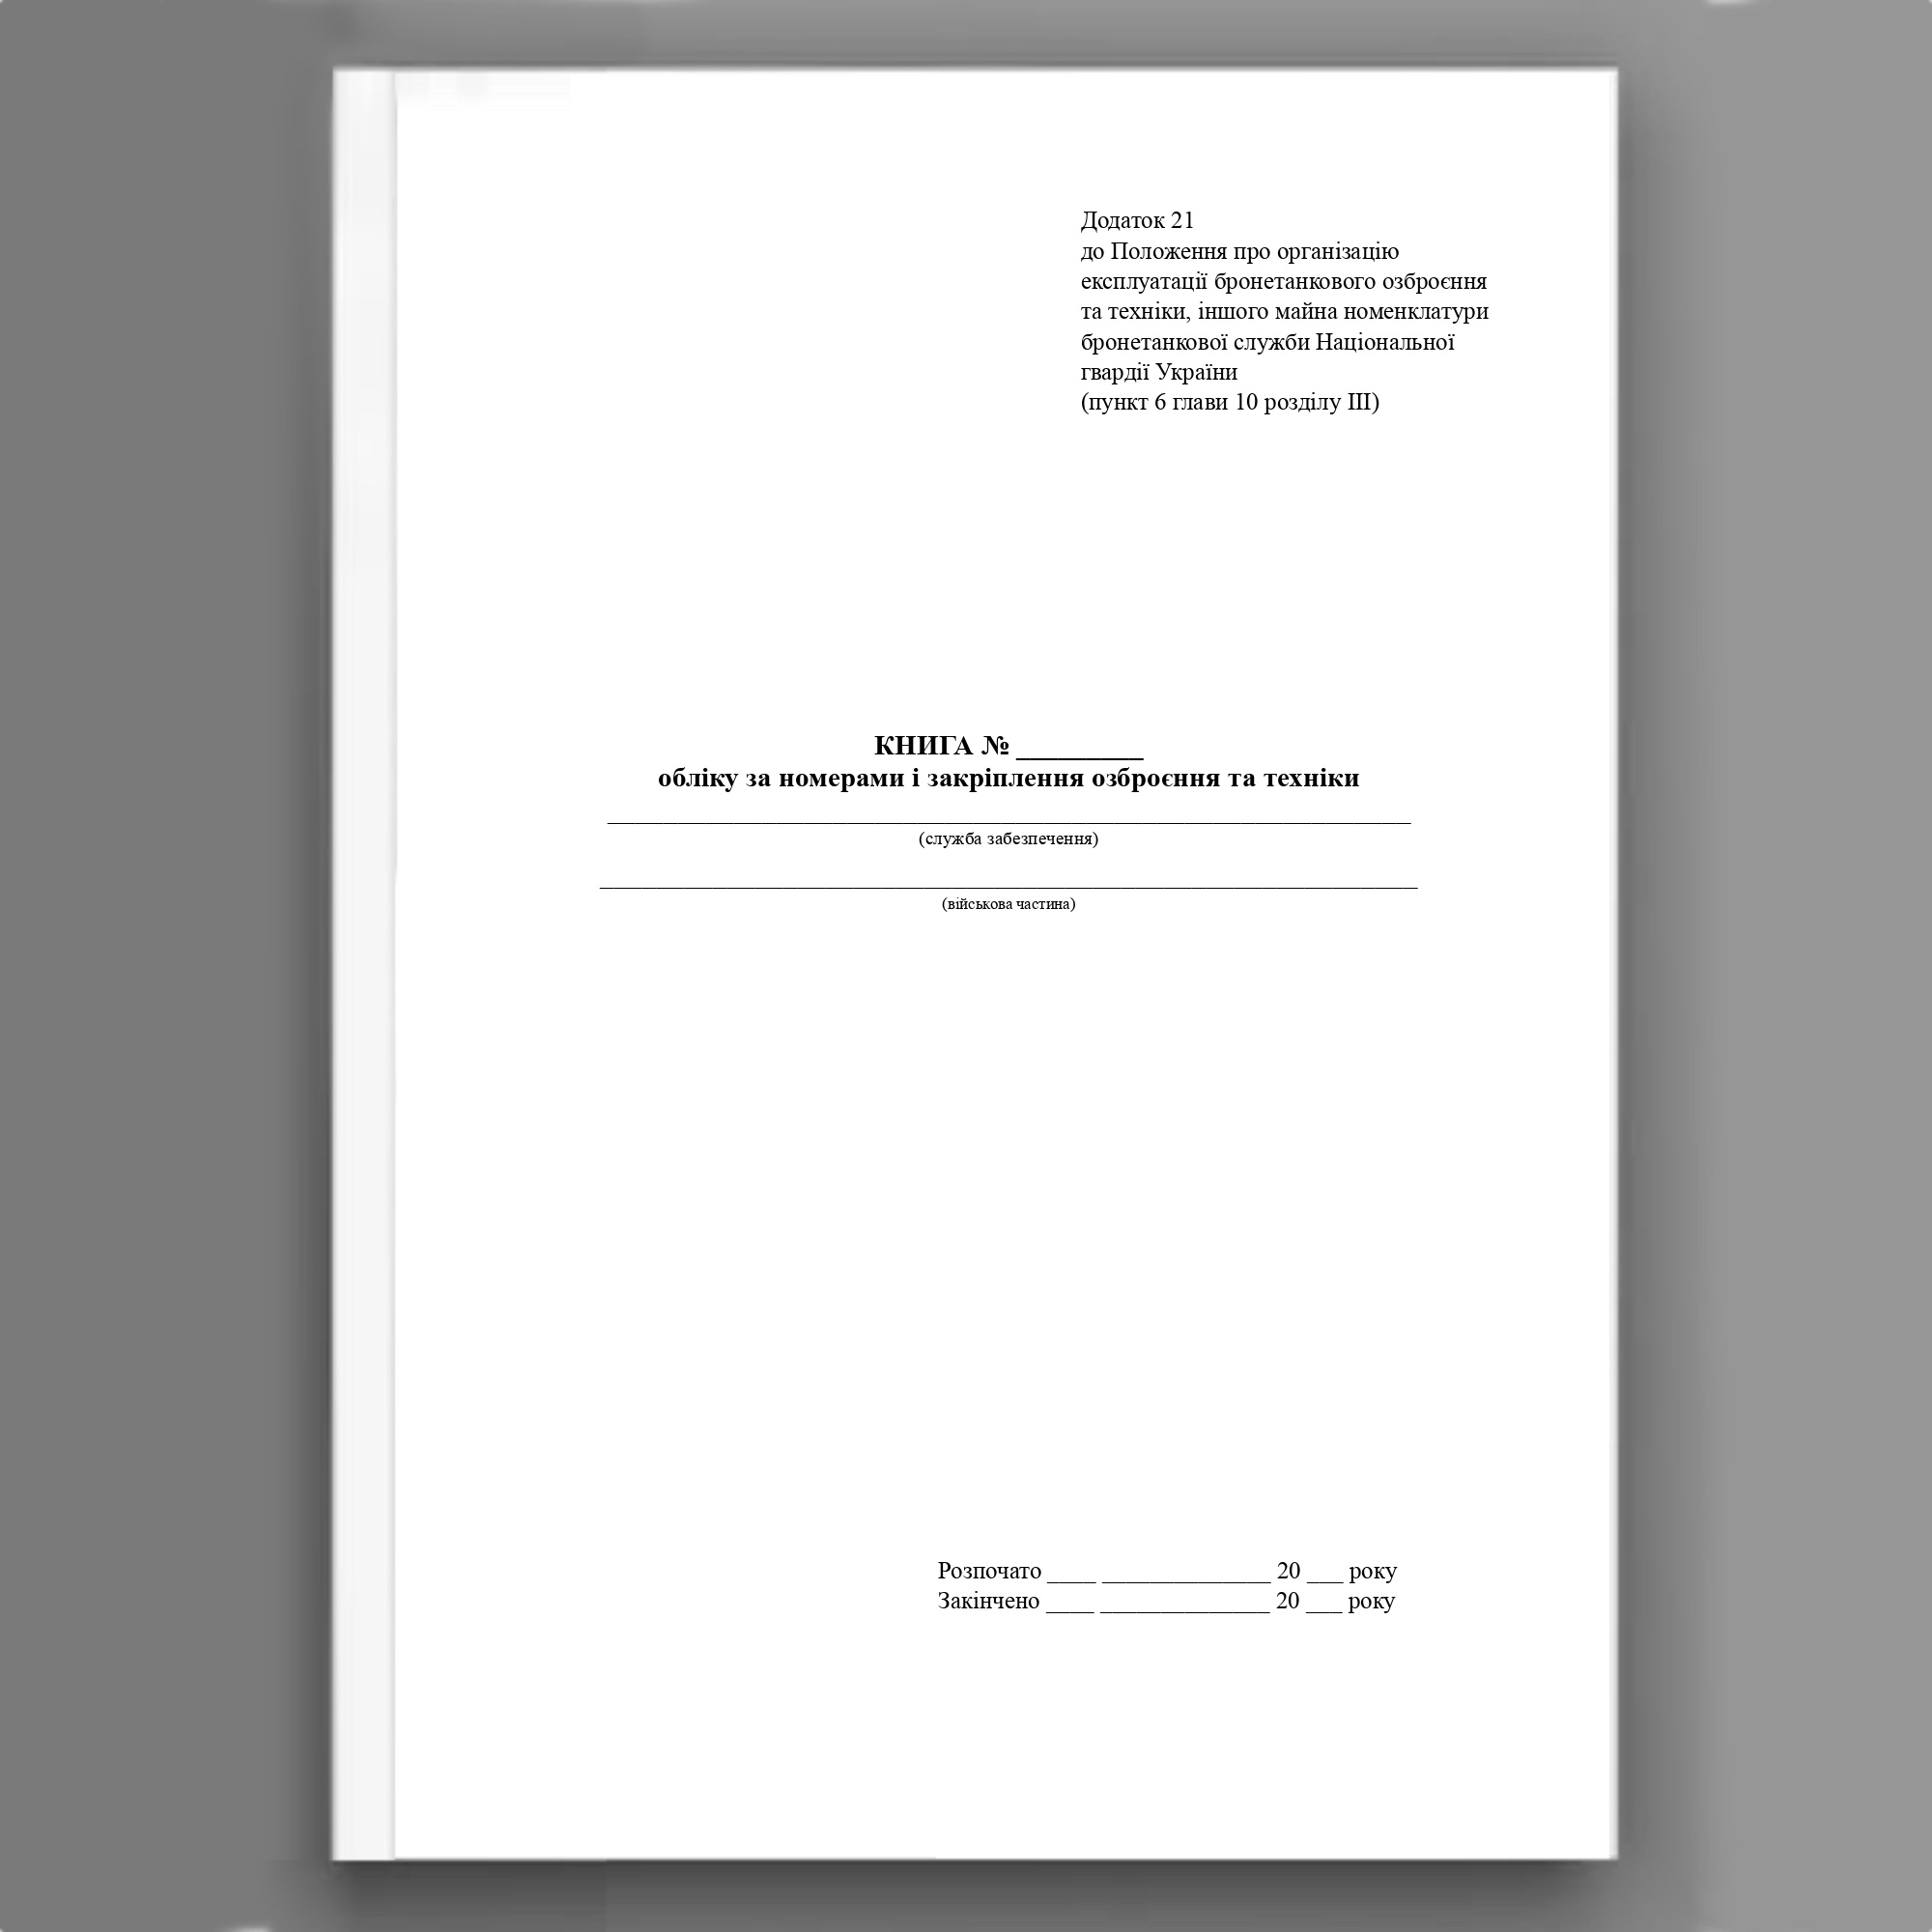 Книга обліку за номерами і закріплення озброєння та техніки, додаток 21